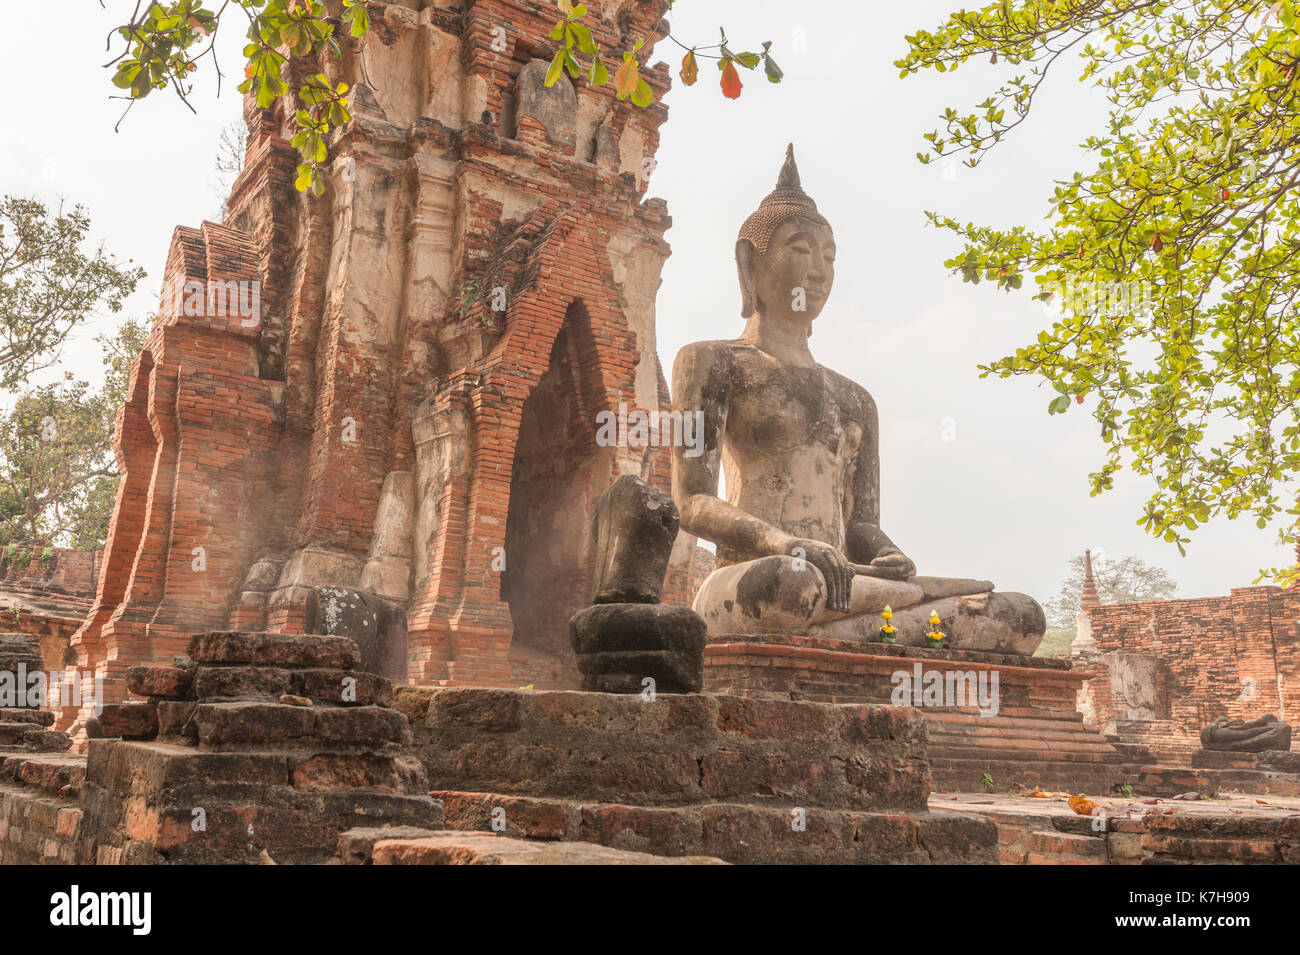 Estatua de Buda en Wat Mahathat (Templo de la Gran reliquia), Ayutthaya, Tailandia. Foto de stock